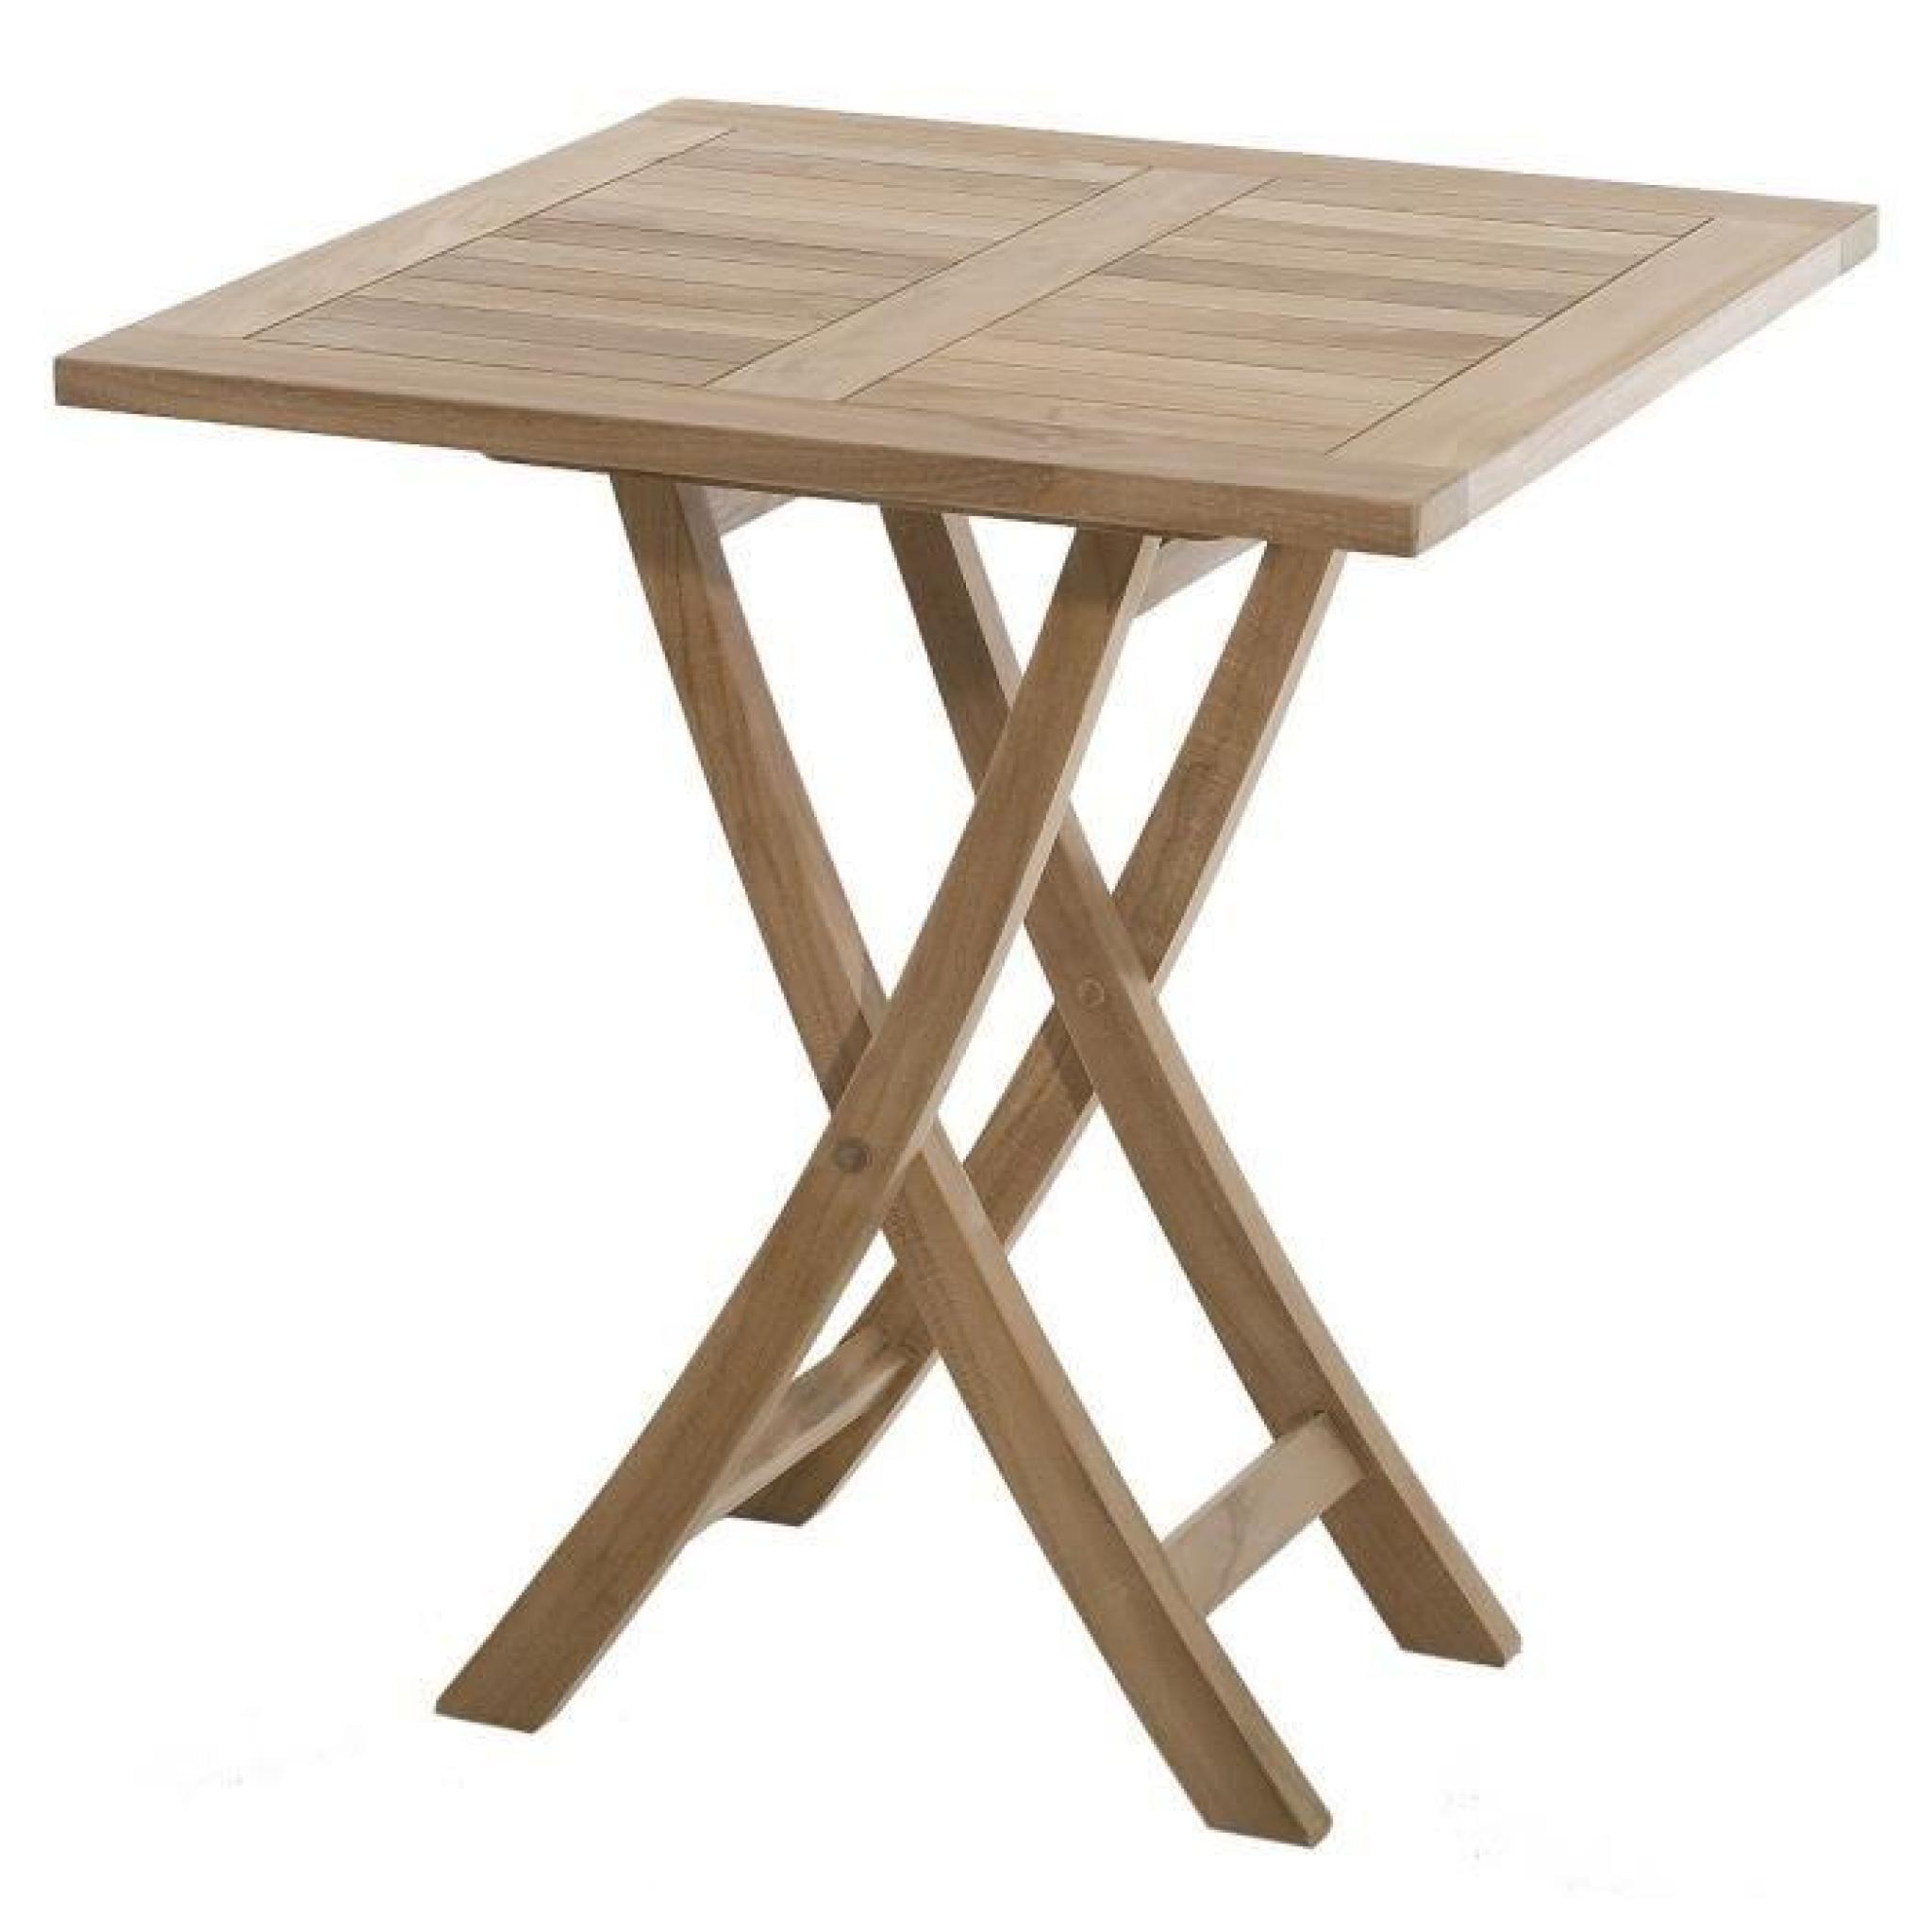 Table de jardin en bois teck carrée pliante 70 x 70 cm pas cher